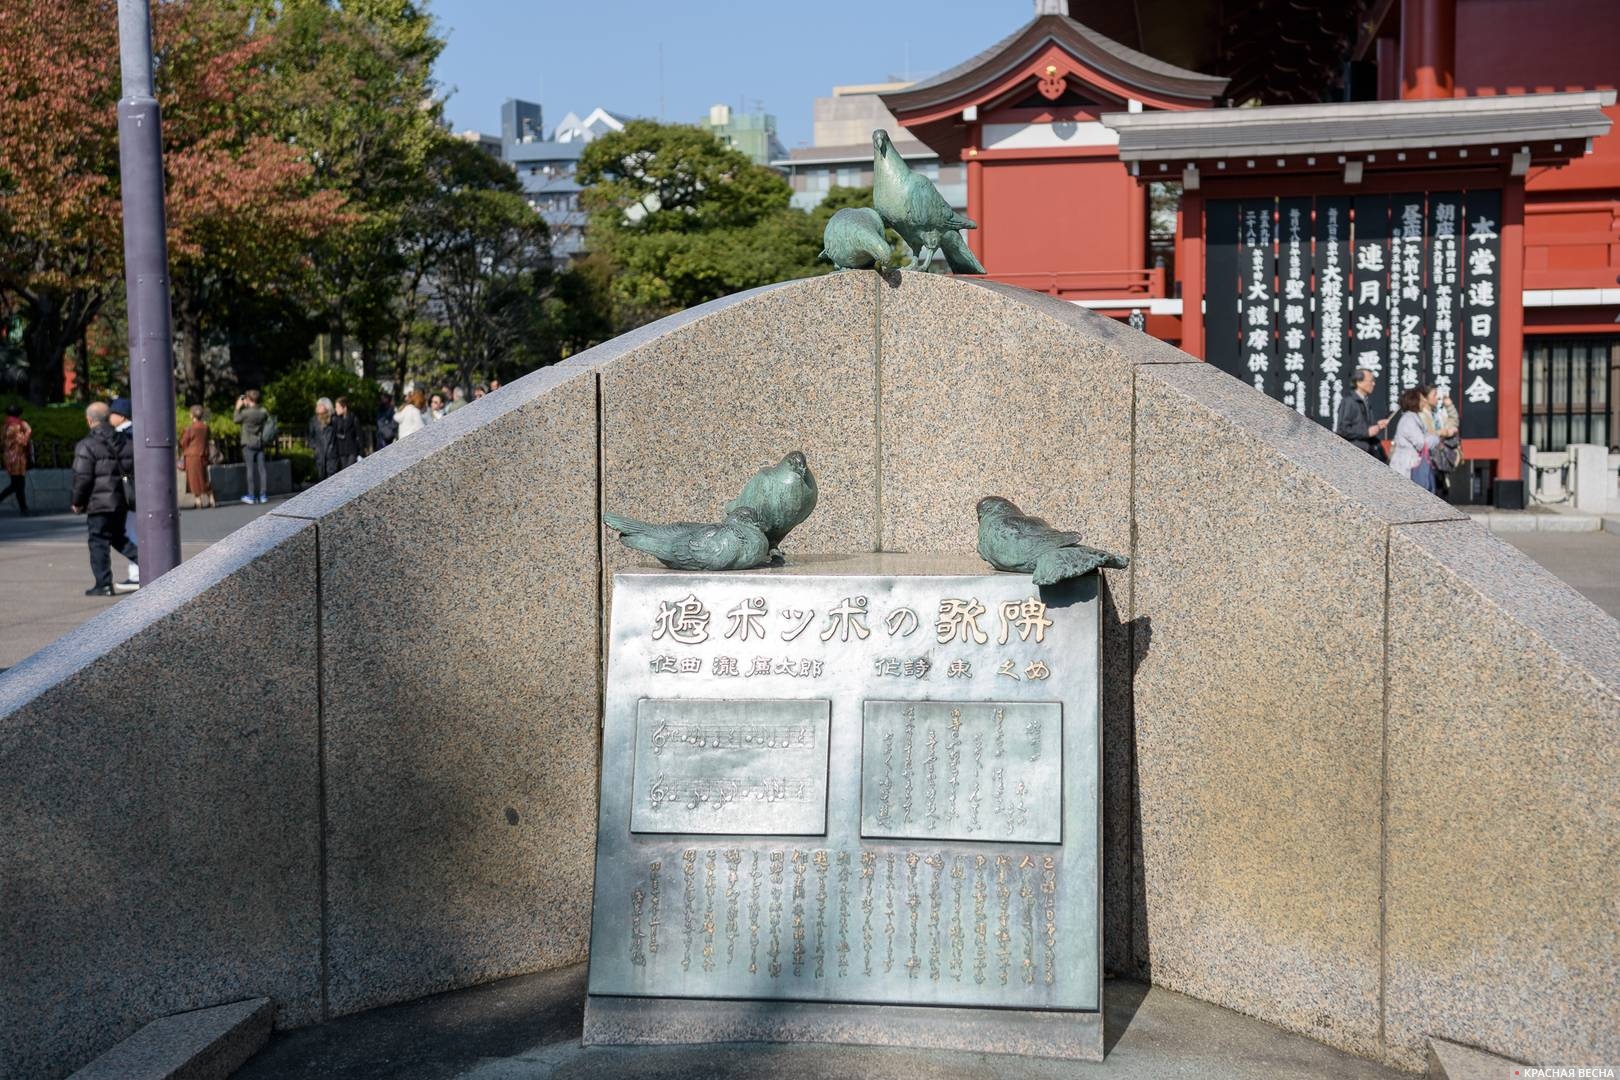 Монумент в честь детской песенки про голубей, буддийский храм Сенсодзи, Токио, Япония 07.11.2016